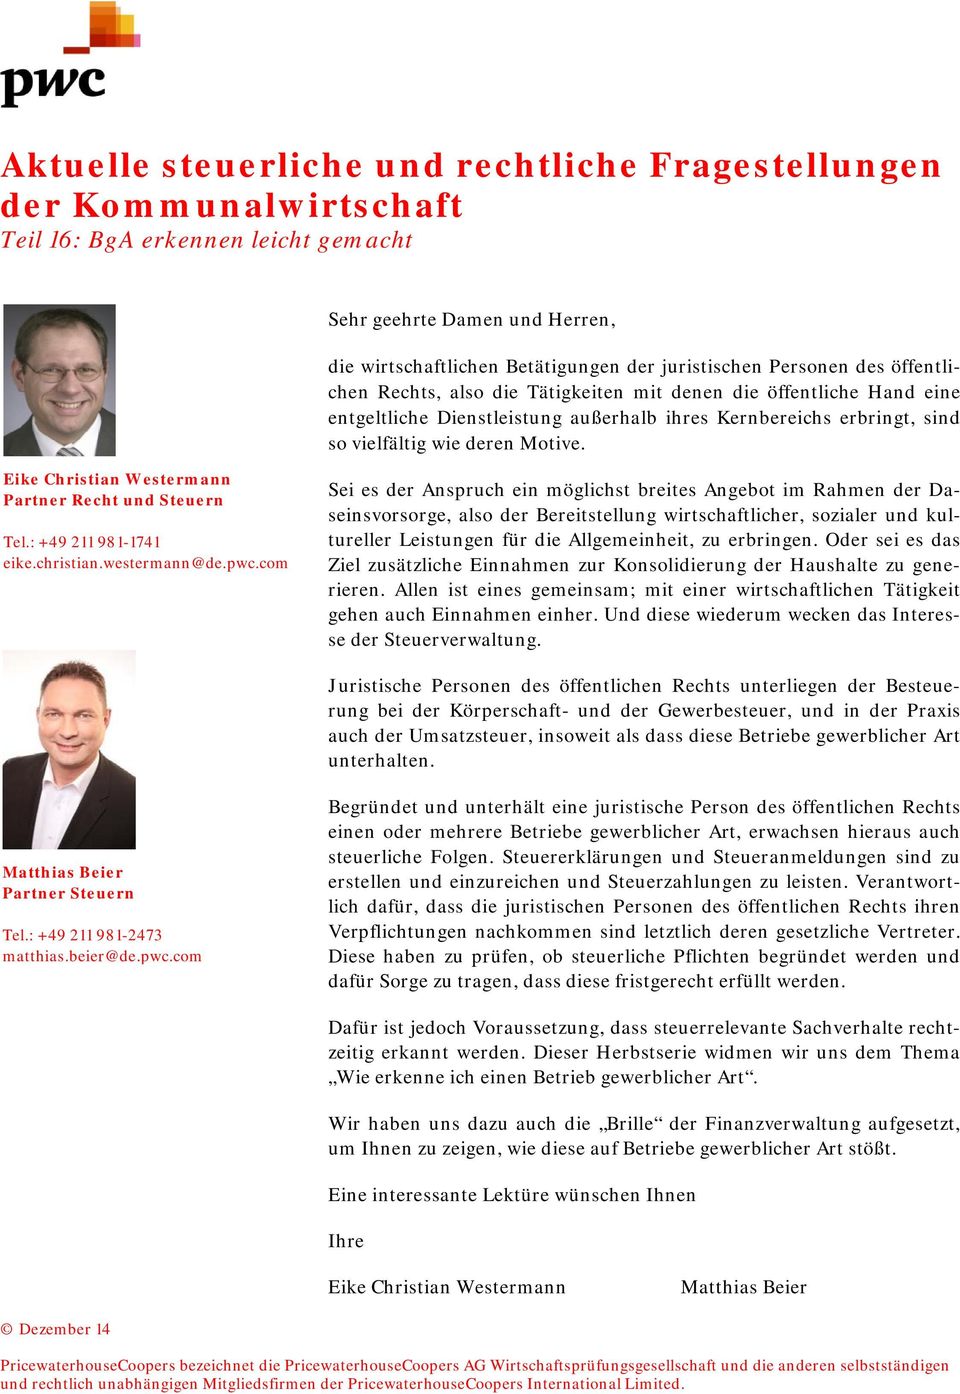 Eike Christian Westermann Partner Recht und Steuern Tel.: +49 211 981-1741 eike.christian.westermann@de.pwc.